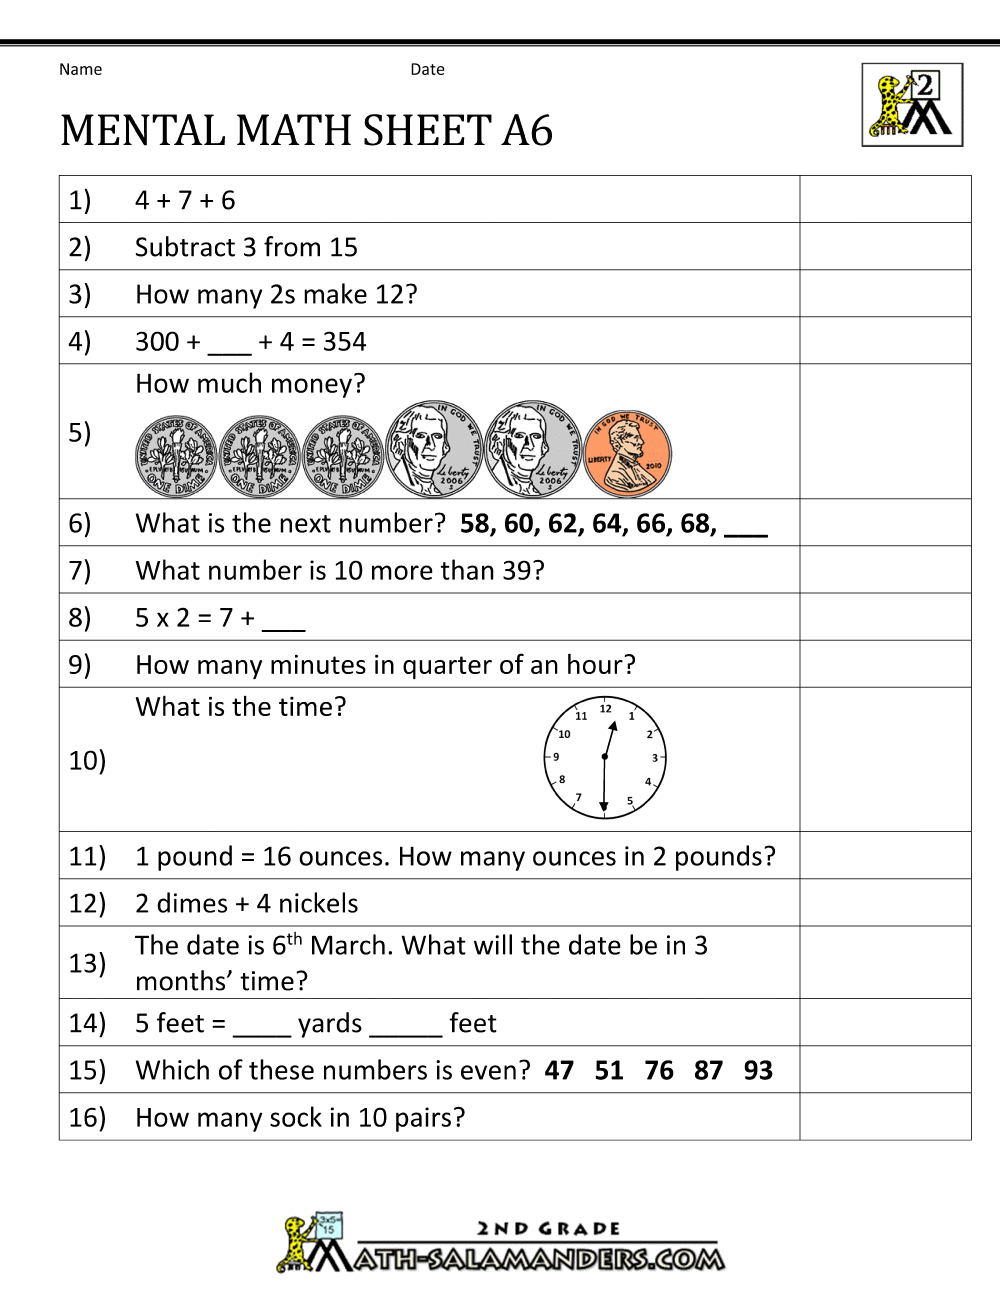 25nd Grade Mental Math Worksheets In 2nd Grade Math Worksheet Pdf